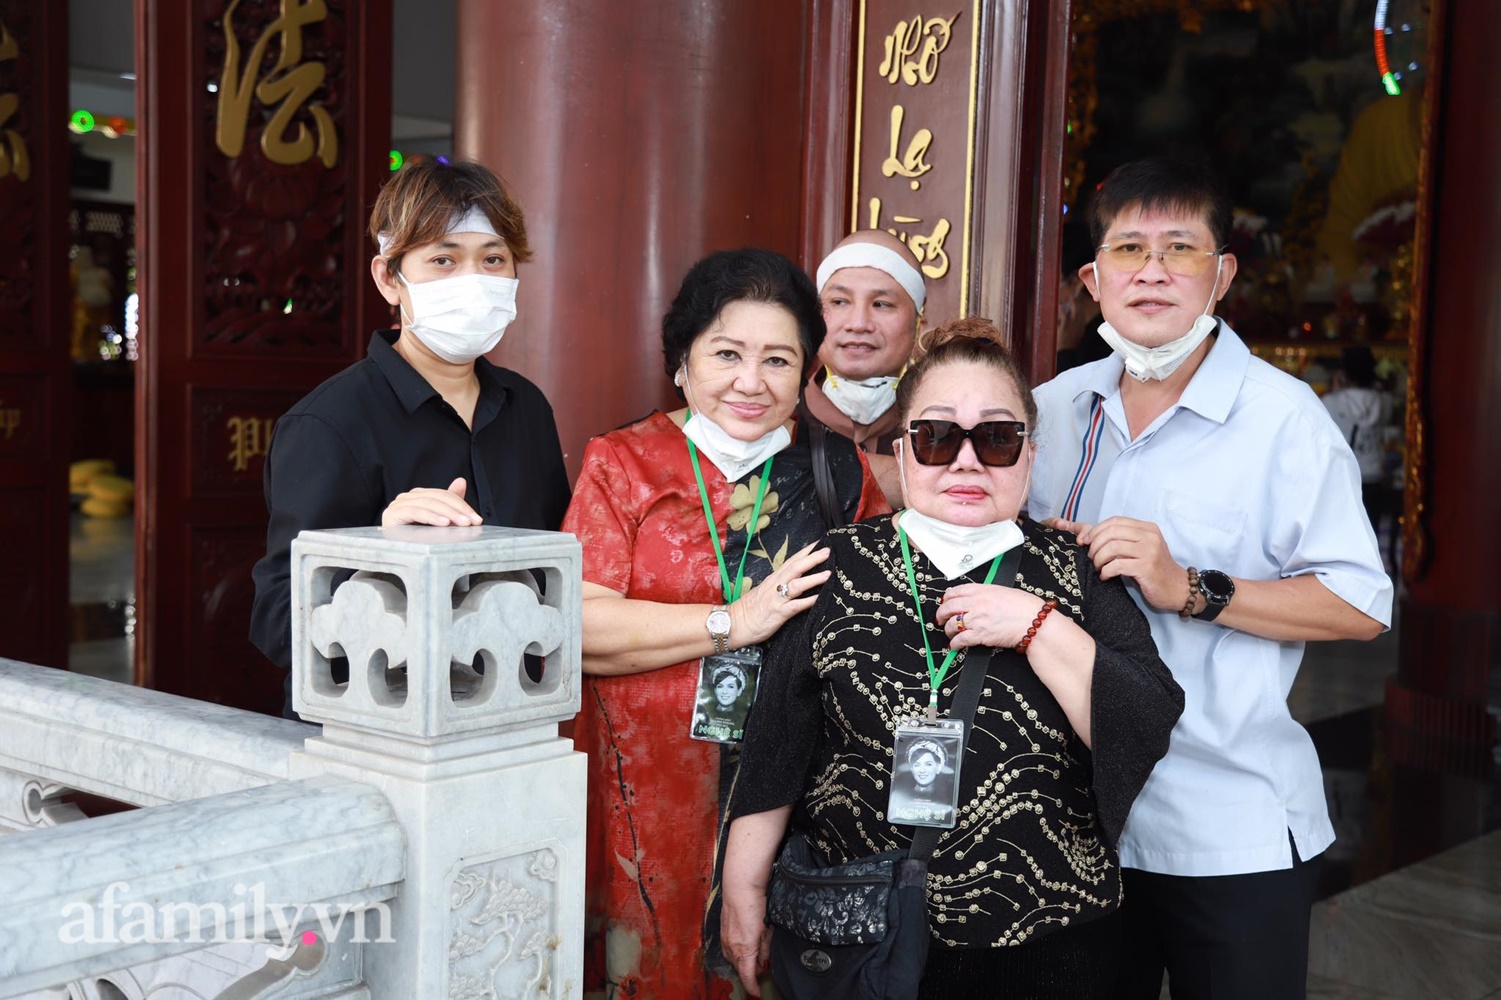 Lễ chung thất của Phi Nhung: Lệ Quyên cùng dàn sao Việt không kìm được nước mắt, Trang Trần xông xáo đón khách - Ảnh 3.